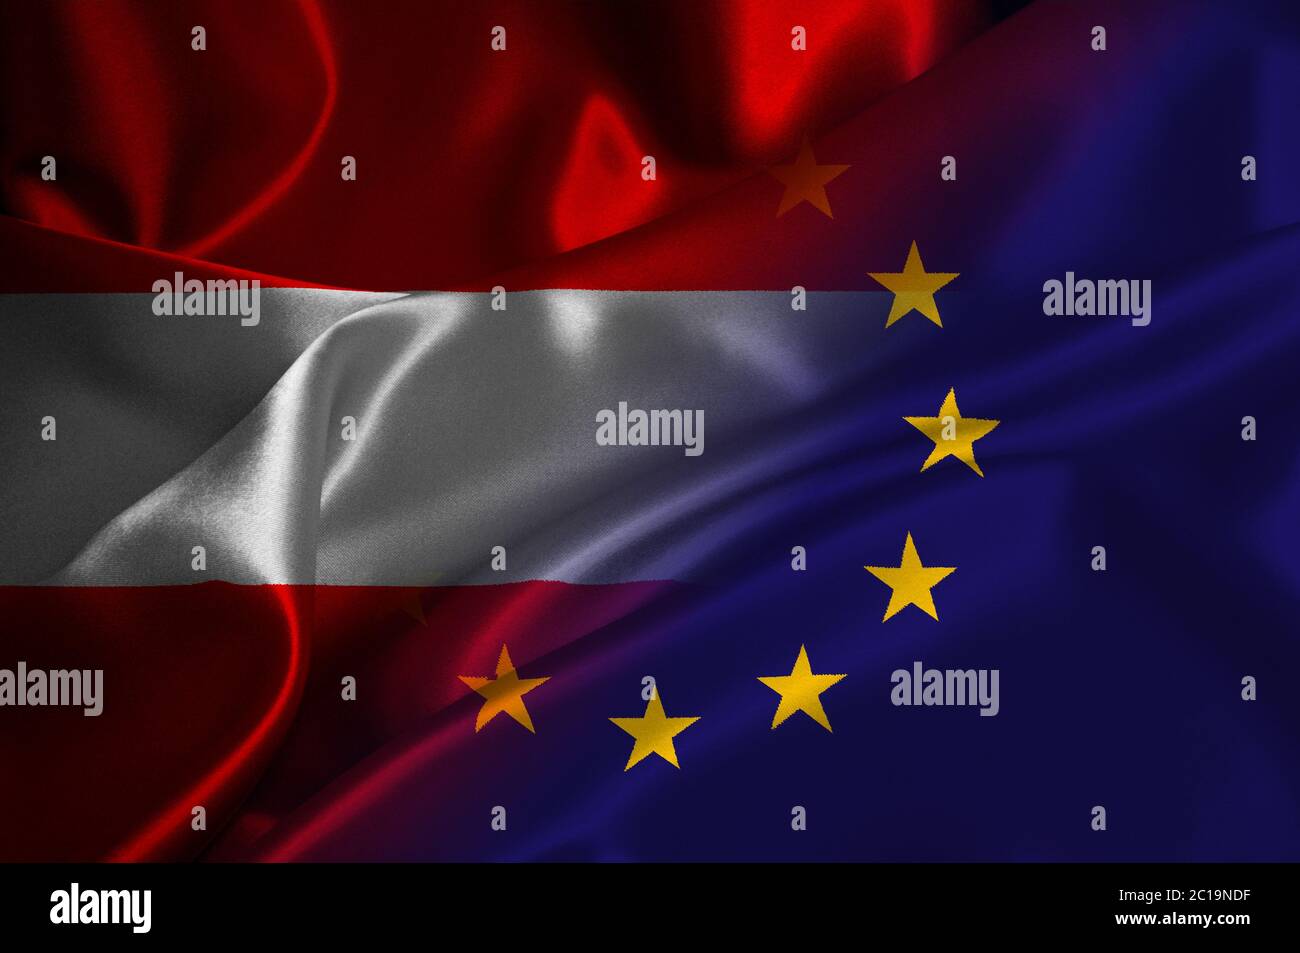 EU flag and Austria flag on satin texture Stock Photo